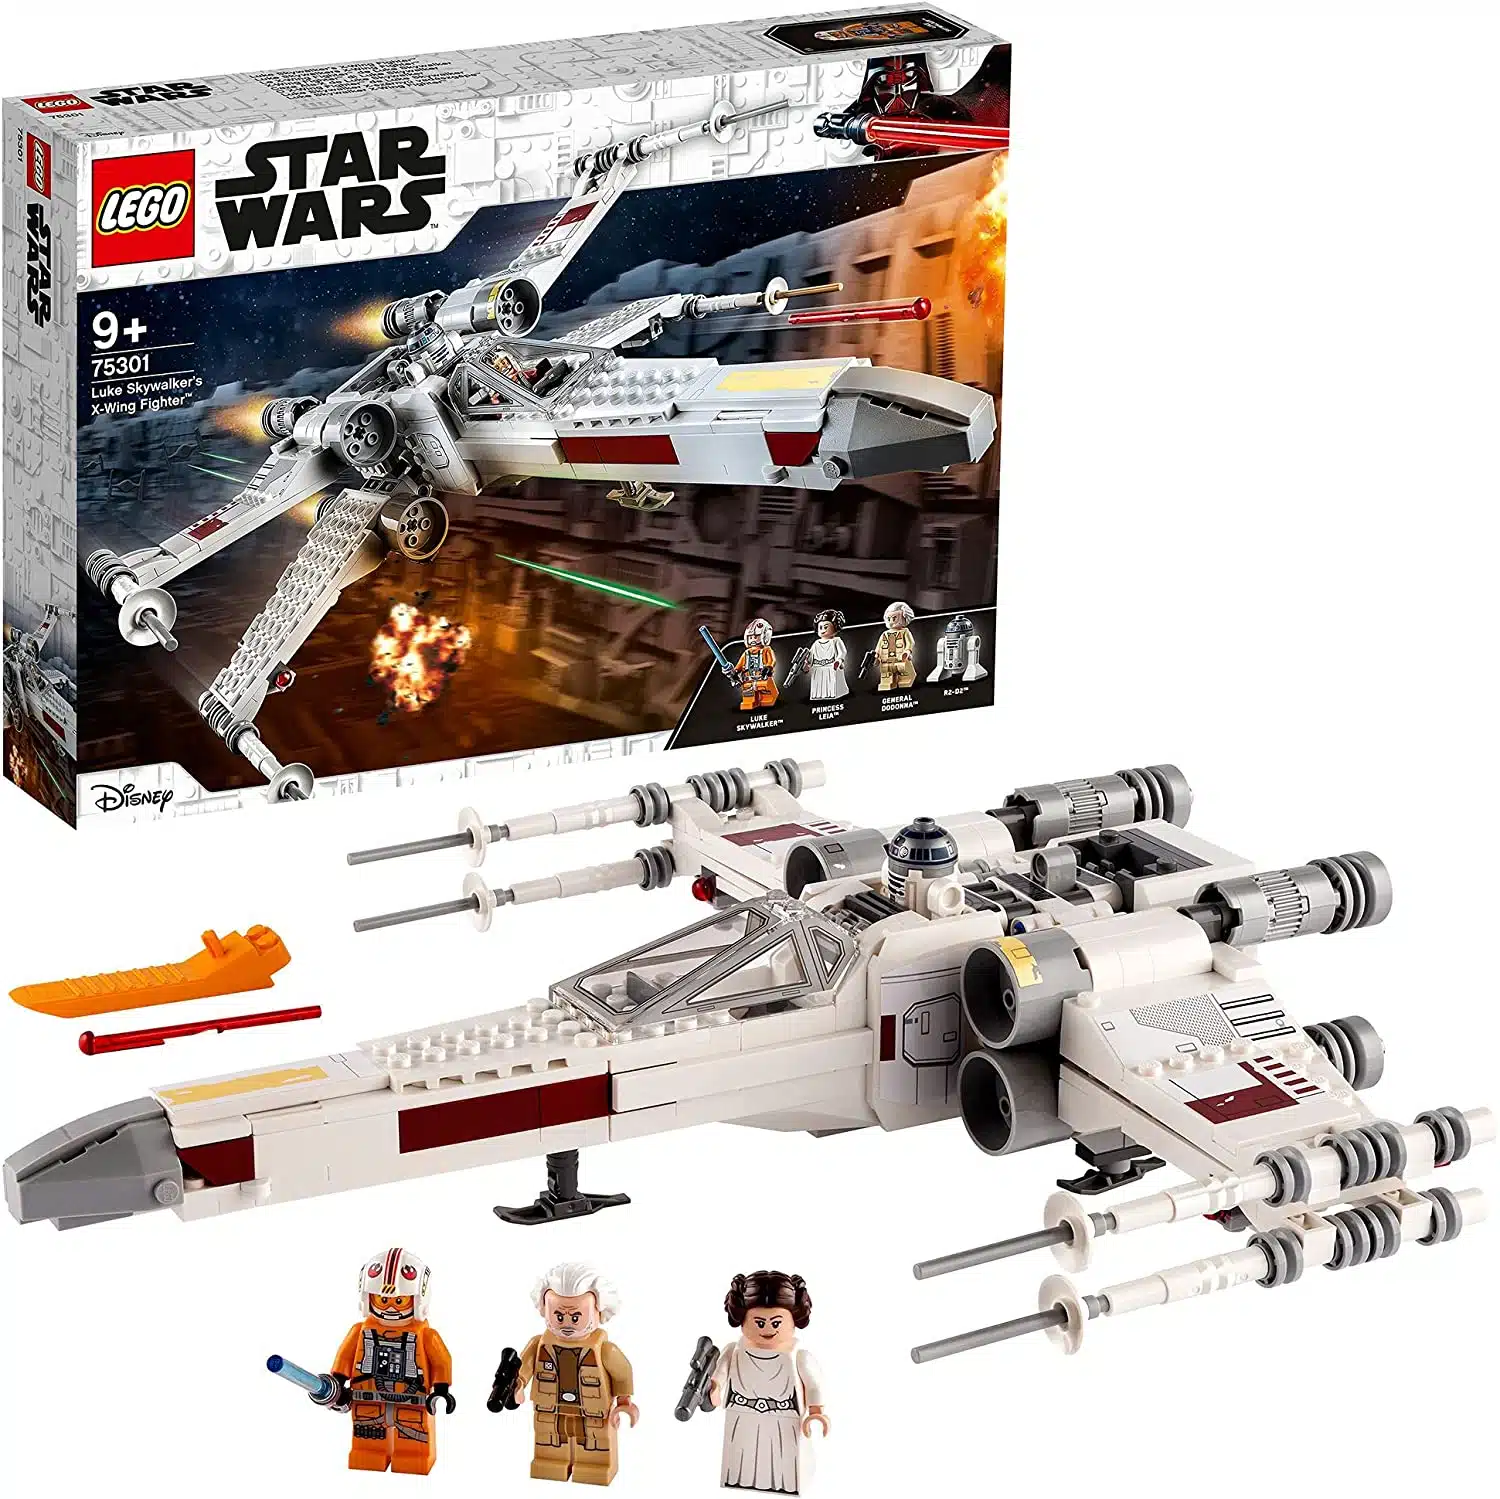  LEGO 75301 Star Wars Luke Skywalkers X-Wing Fighter Spielzeug mit Prinzessin Leia und Droide R2-D2 als Figur